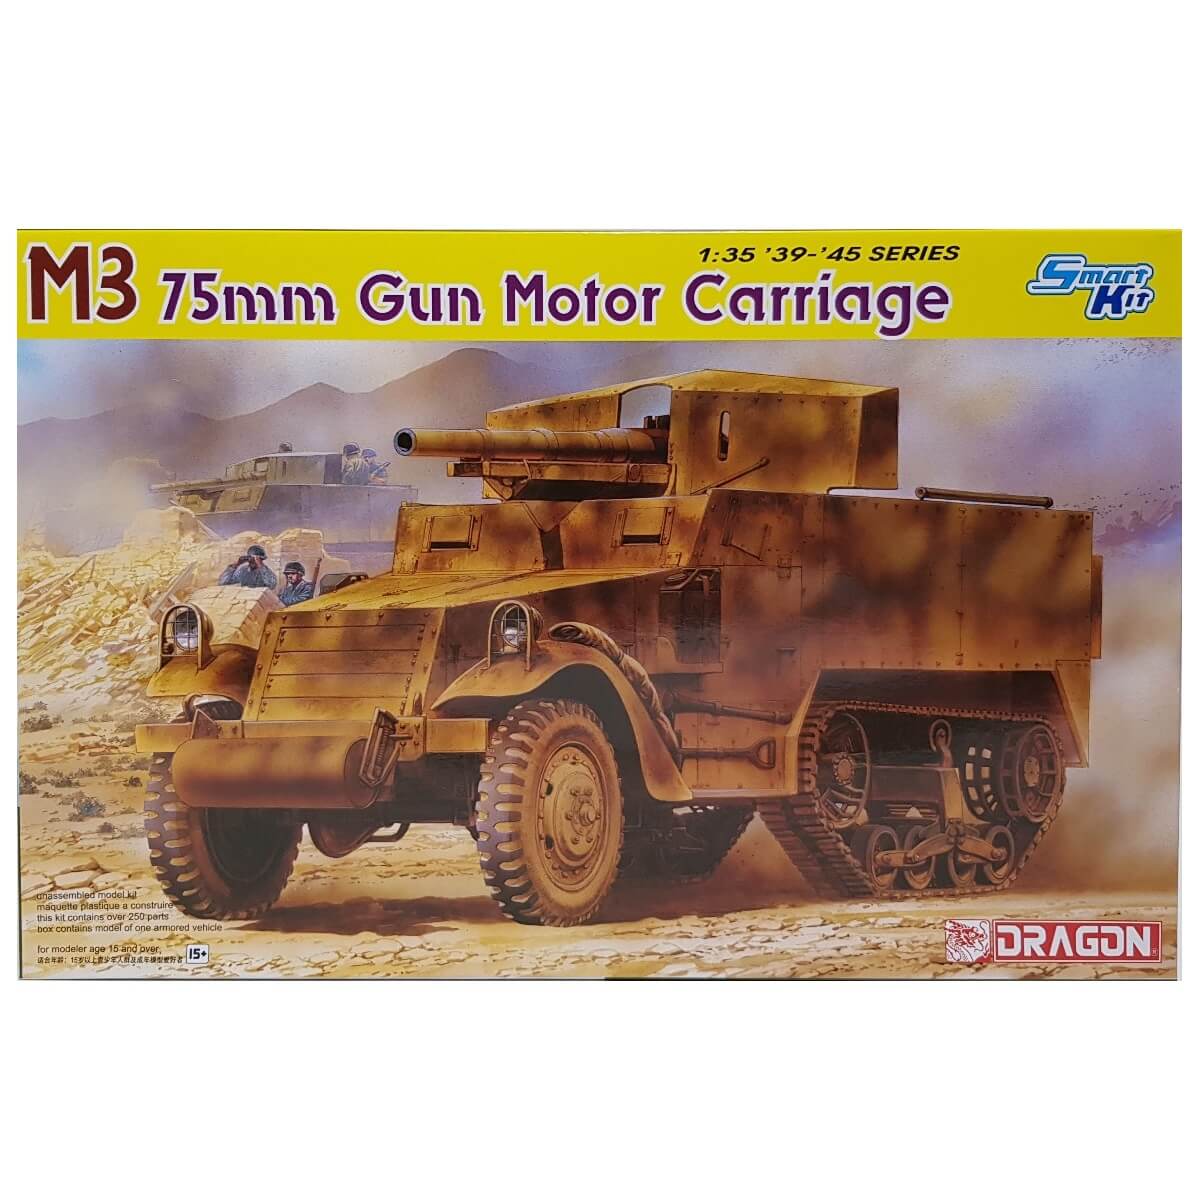 1:35 M3 75mm Gun Motor Carriage - DRAGON